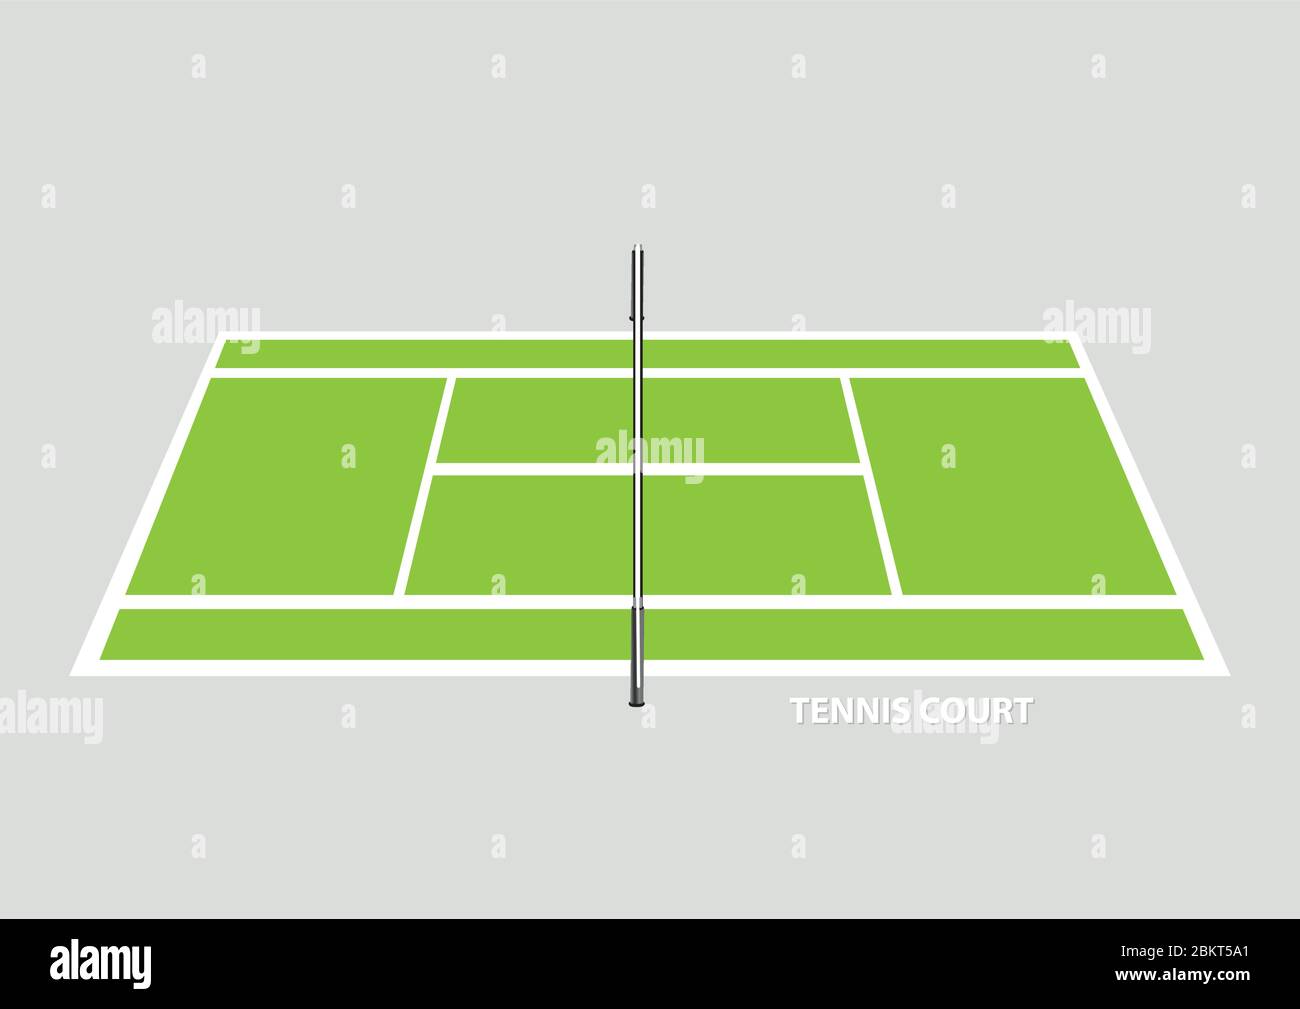 Tennis court perspective Banque d'images vectorielles - Alamy